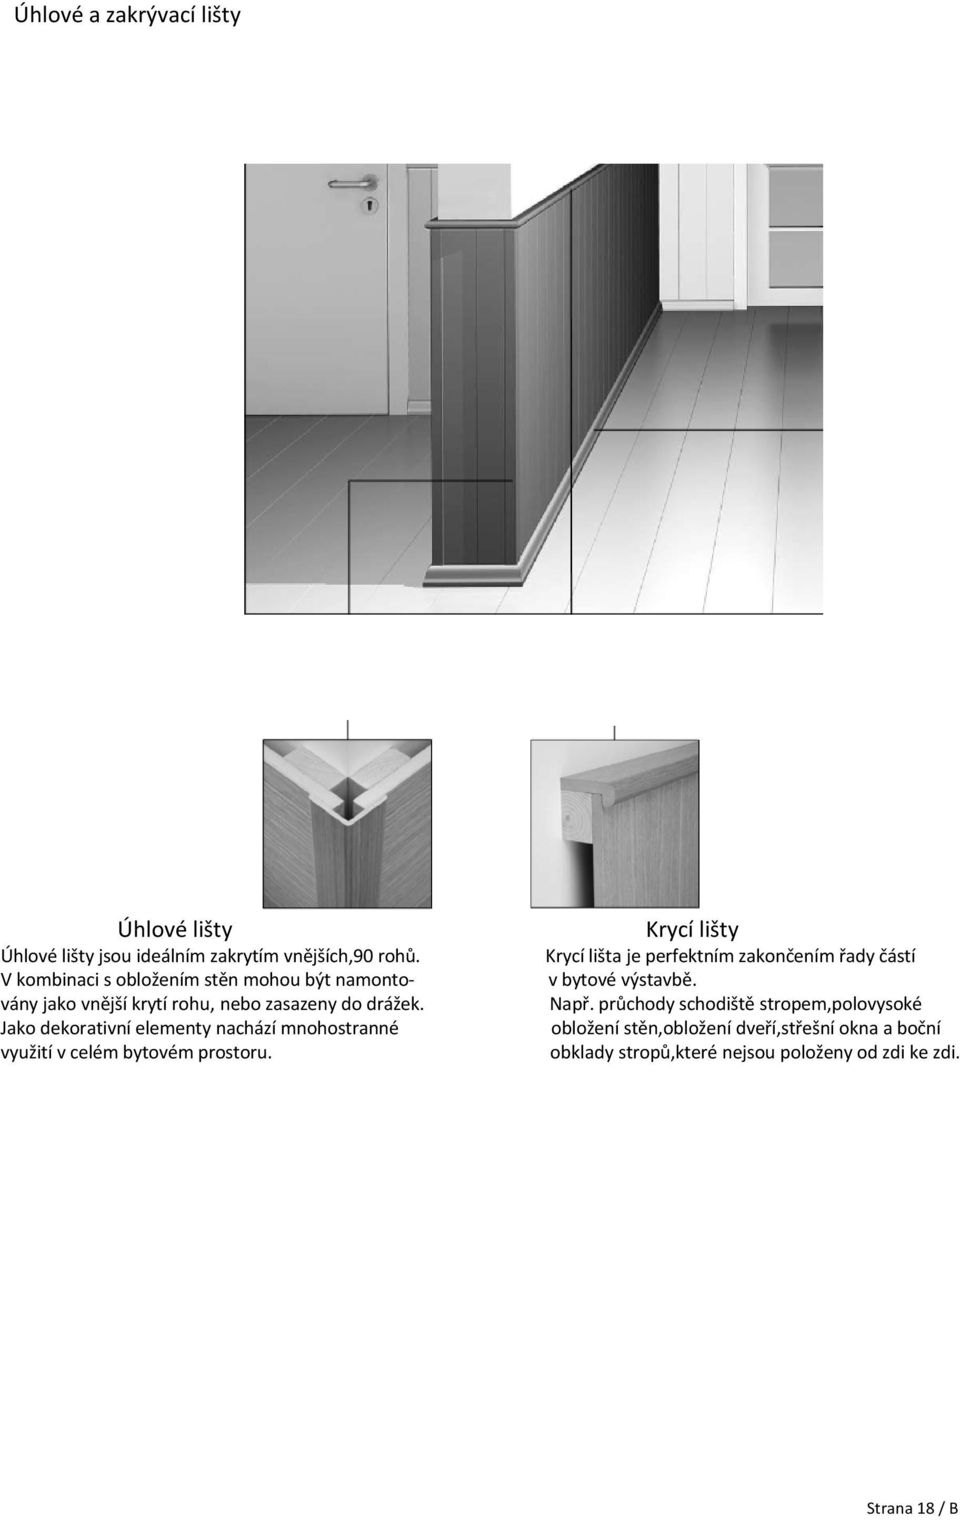 Jako dekorativná elementy nachäzá mnohostrannö využitá v celöm bytovöm prostoru.